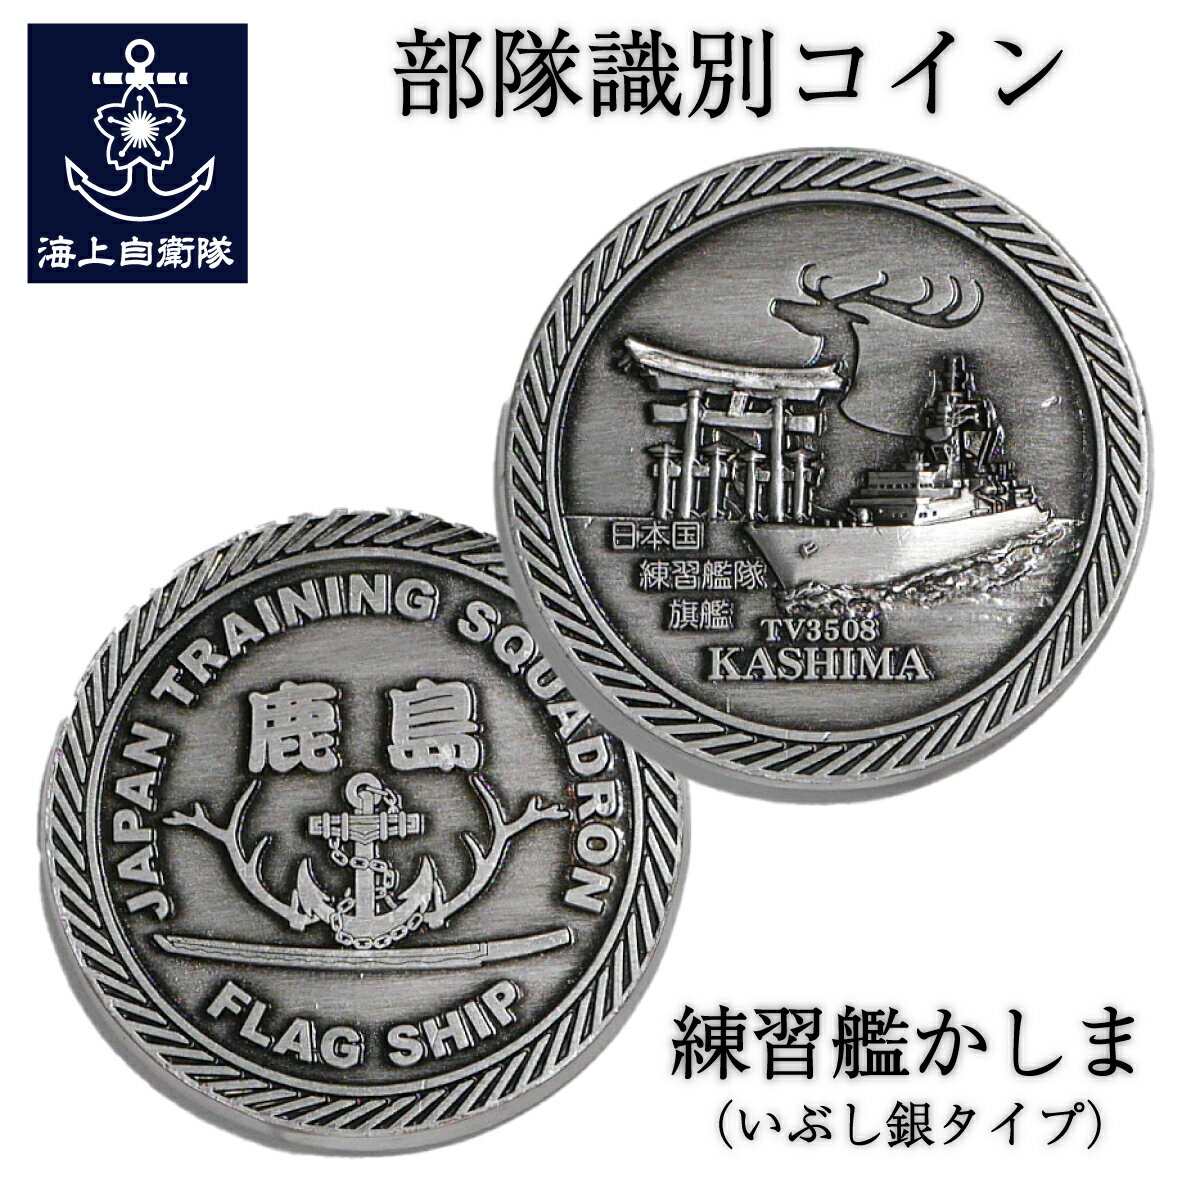 部隊識別コイン メダル 練習艦かしま ( いぶし銀タイプ )